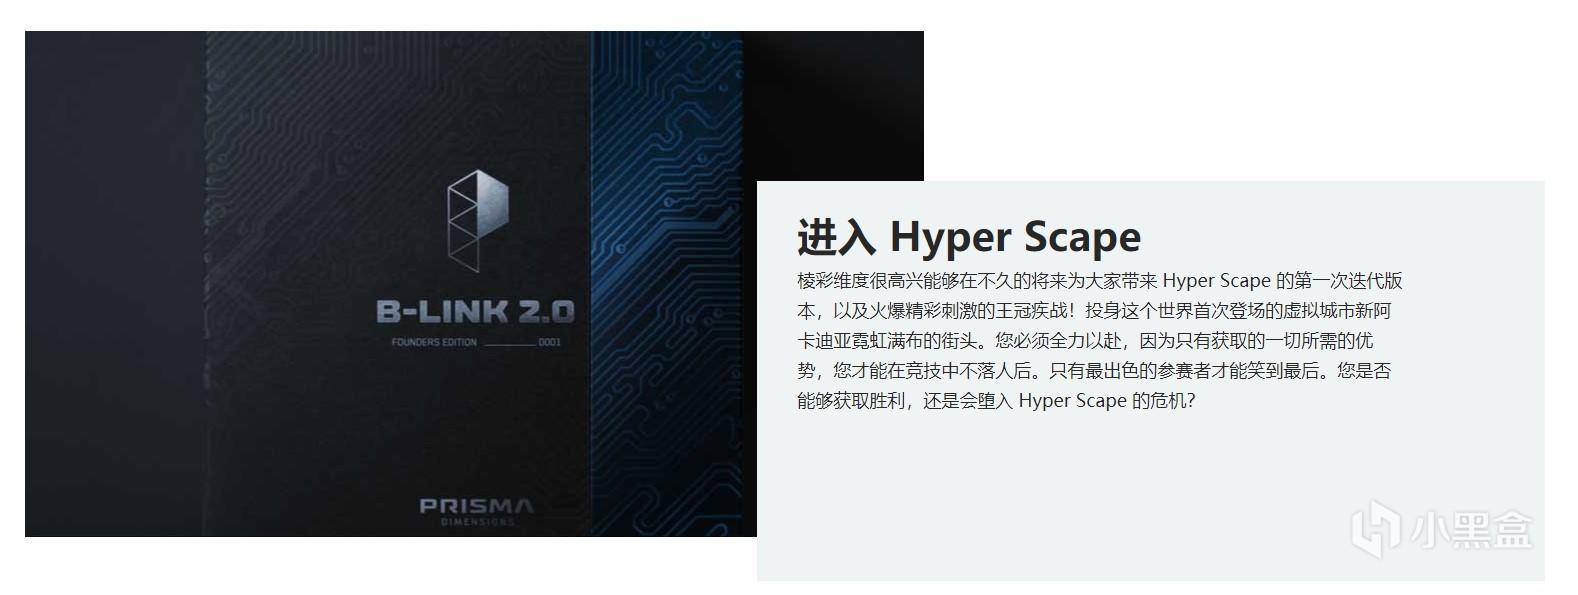 育碧大逃杀新作《Hyper Scape》中文网站“棱彩维度”上线 5%title%